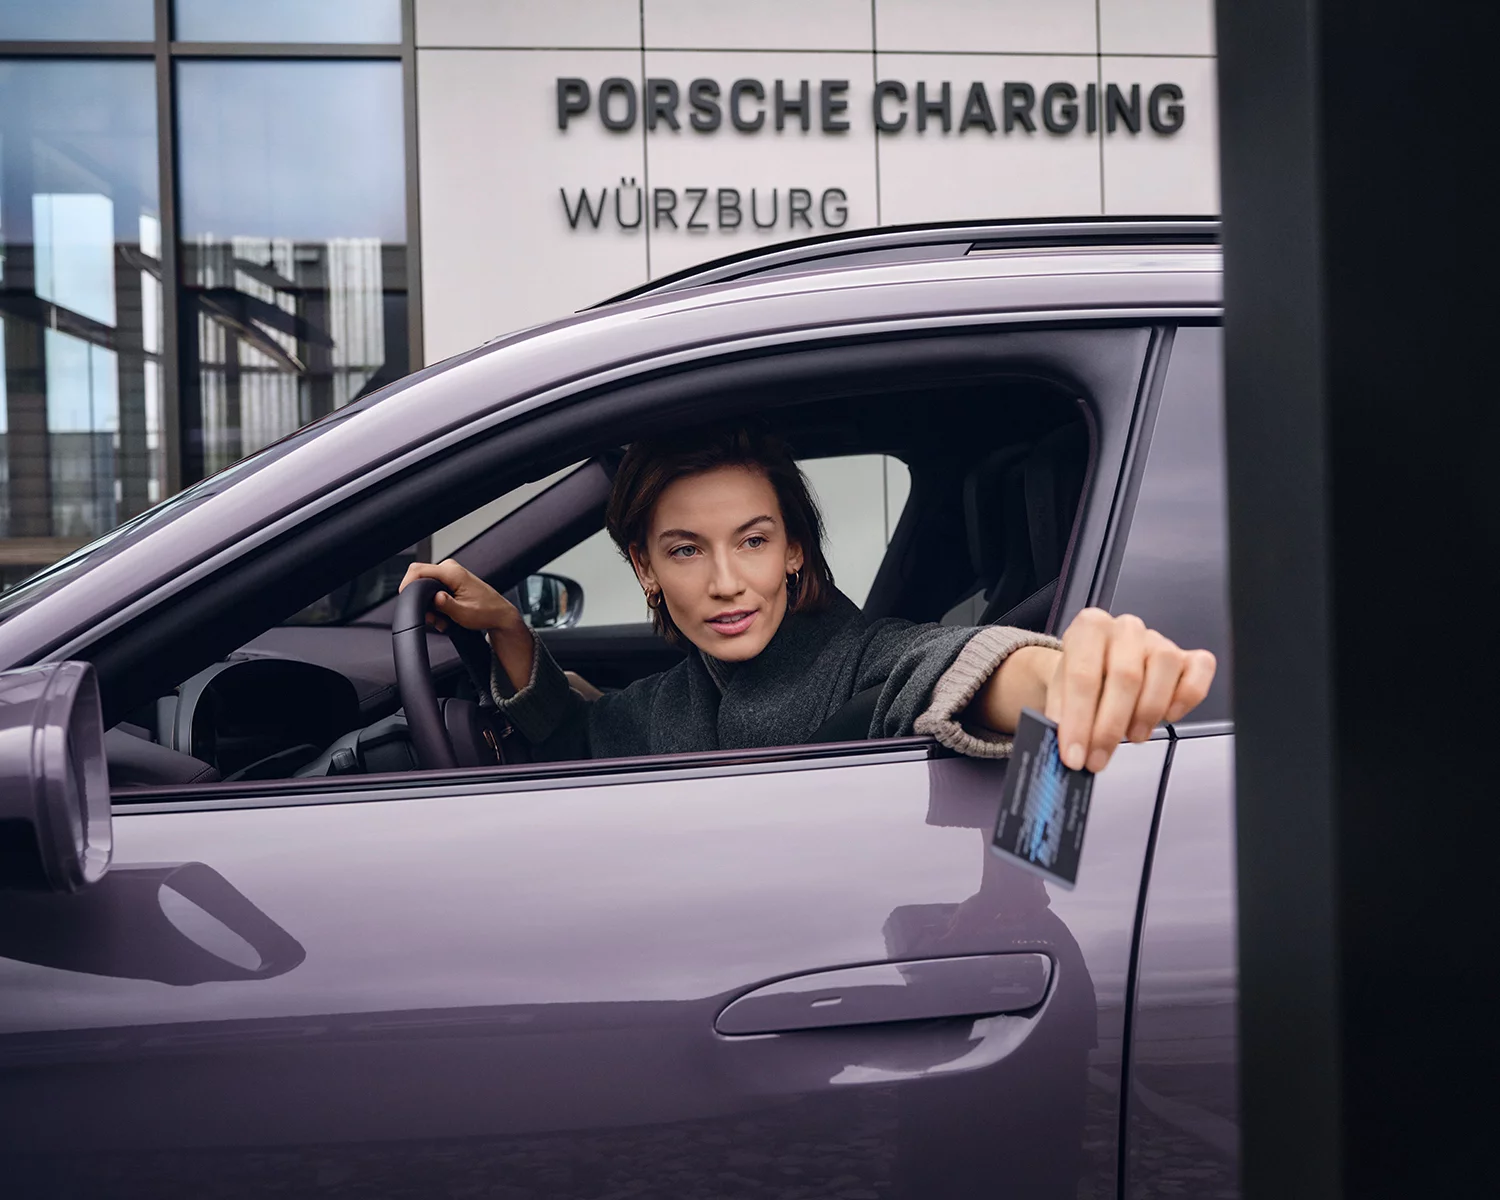 Porsche Charging Lounge 7 by Benjamin PICHELMANN